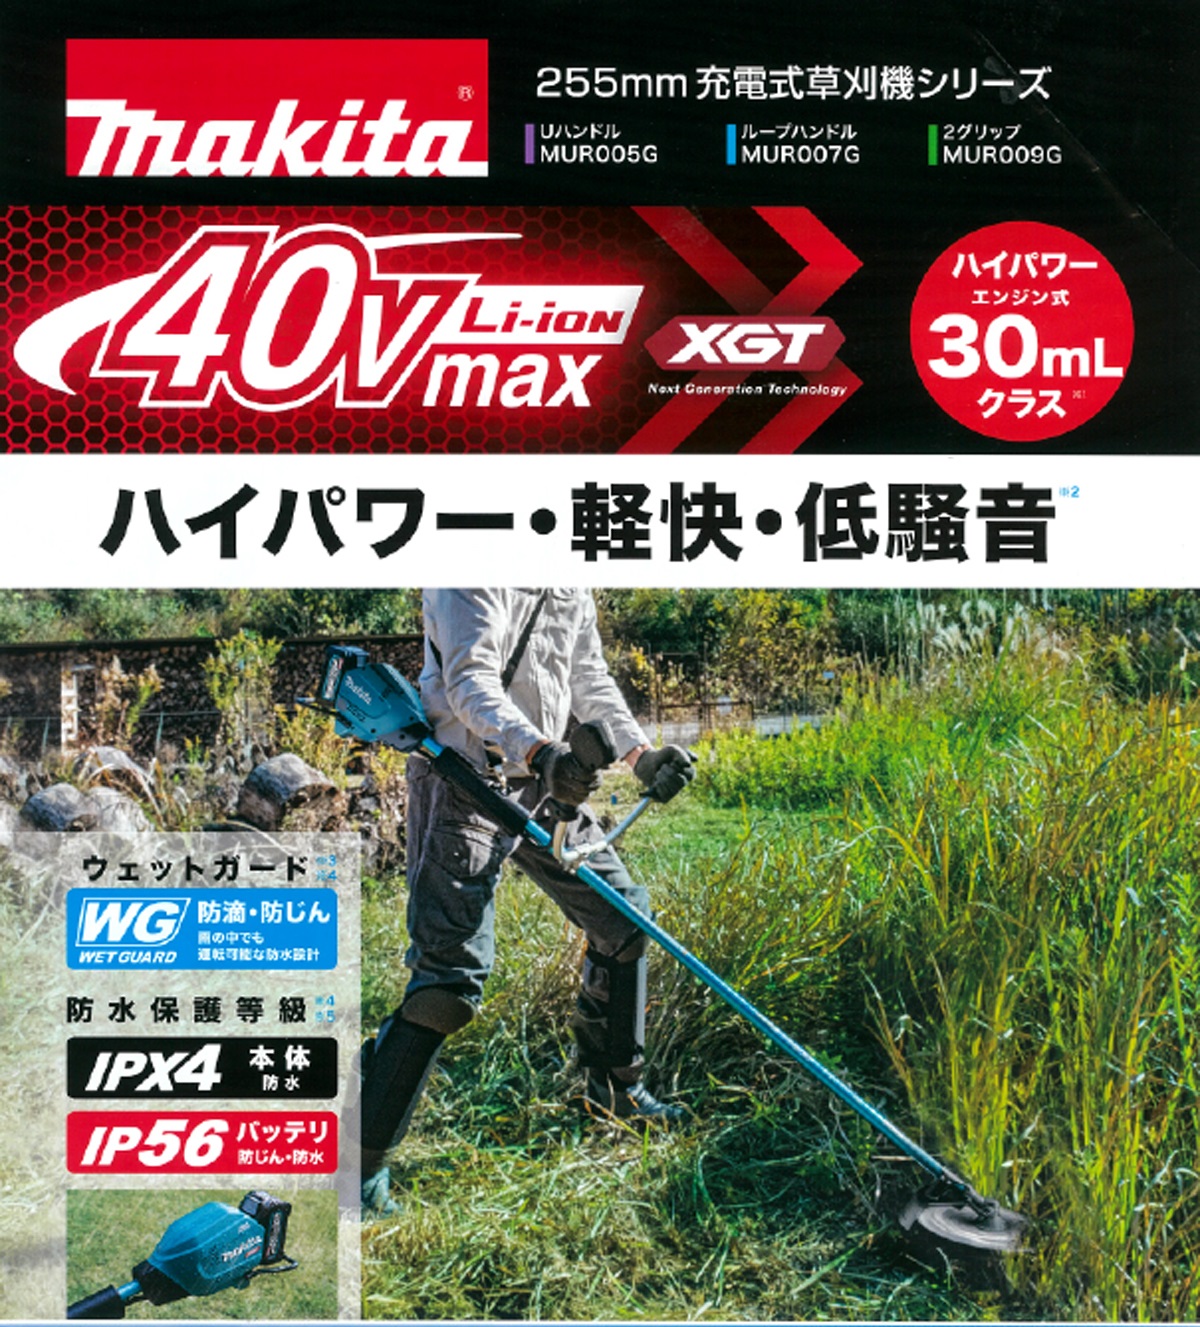 マキタ 充電式草刈機 ループハンドル MUR017GZ 本体のみ 40Vmax対応 makita 大型製品 セット品バラシ - 2